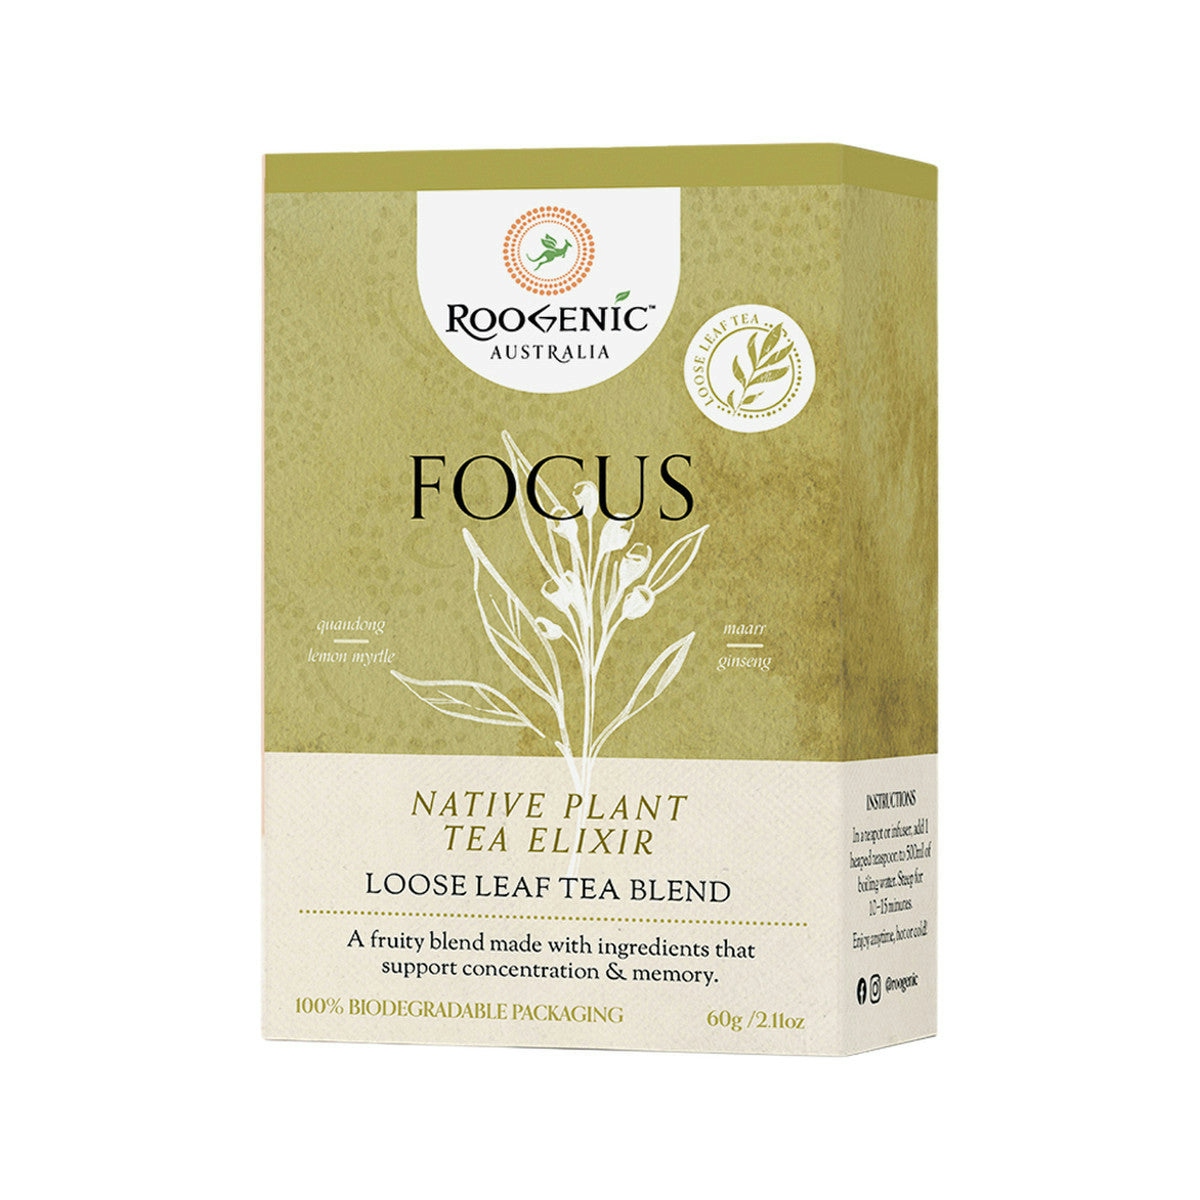 Roogenic Australia Focus Native Plant Tea Elixir Loose Leaf 60g